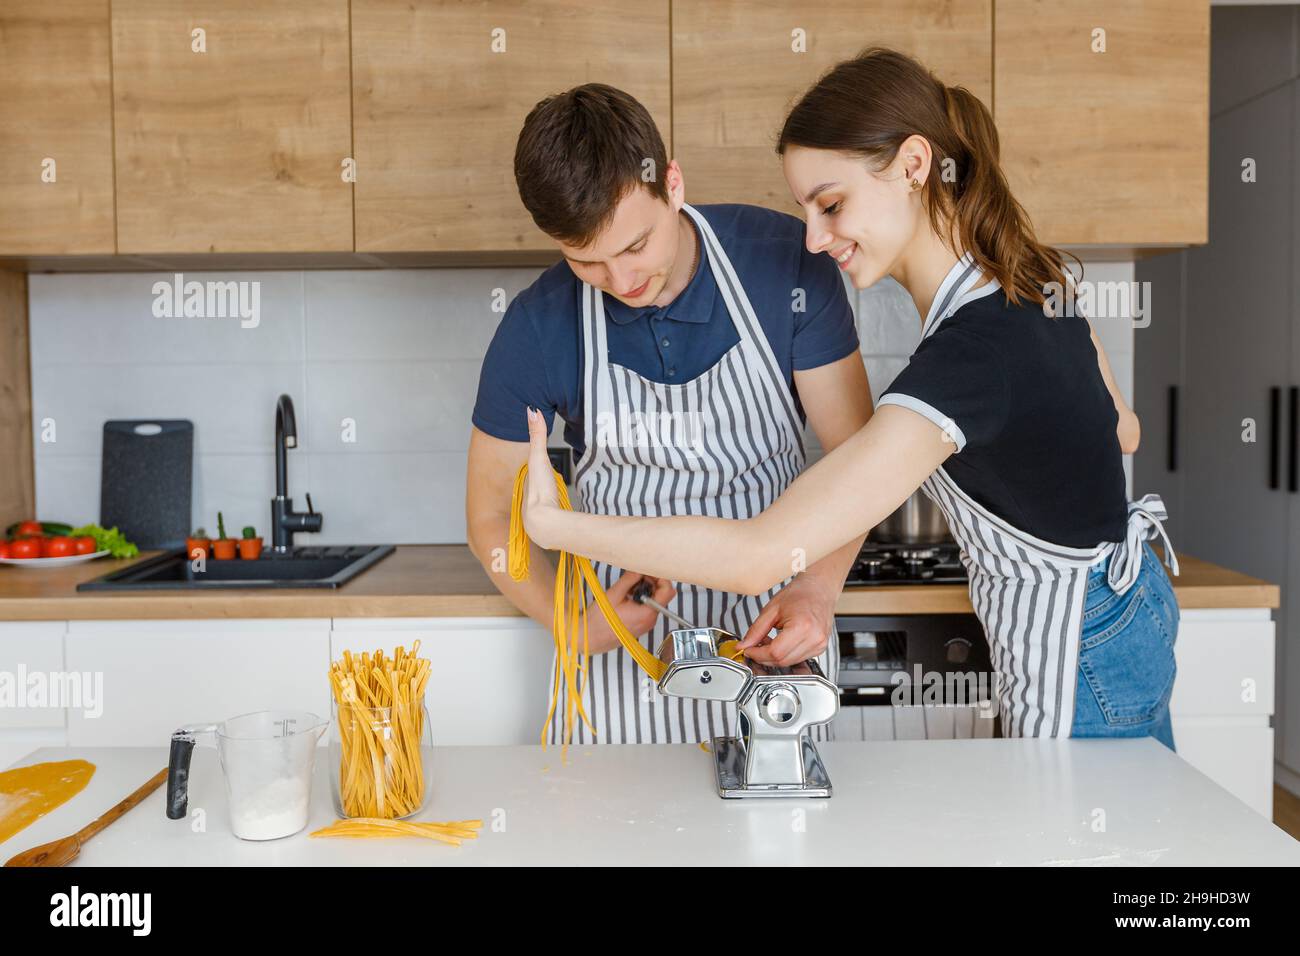 Junges Paar in Schürzen, das Pasta mit Nudelschneider zubereitet. Familie kocht veganes Essen zu Hause. Konzept der häuslichen Lebensweise, gesunde Ernährung, glückliche Marria Stockfoto